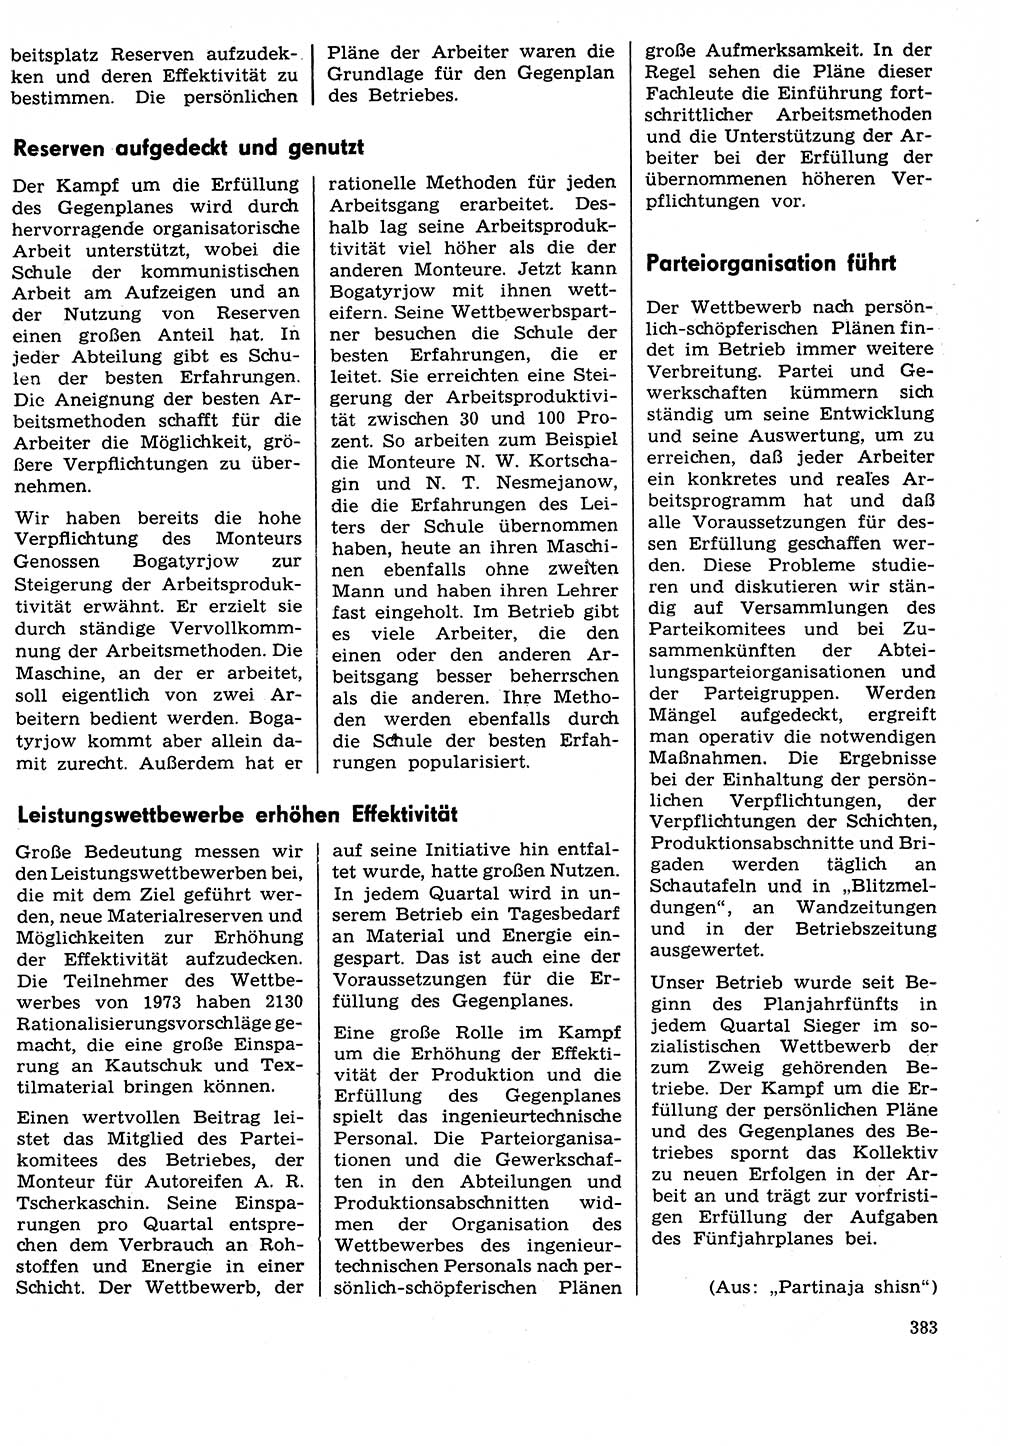 Neuer Weg (NW), Organ des Zentralkomitees (ZK) der SED (Sozialistische Einheitspartei Deutschlands) für Fragen des Parteilebens, 29. Jahrgang [Deutsche Demokratische Republik (DDR)] 1974, Seite 383 (NW ZK SED DDR 1974, S. 383)